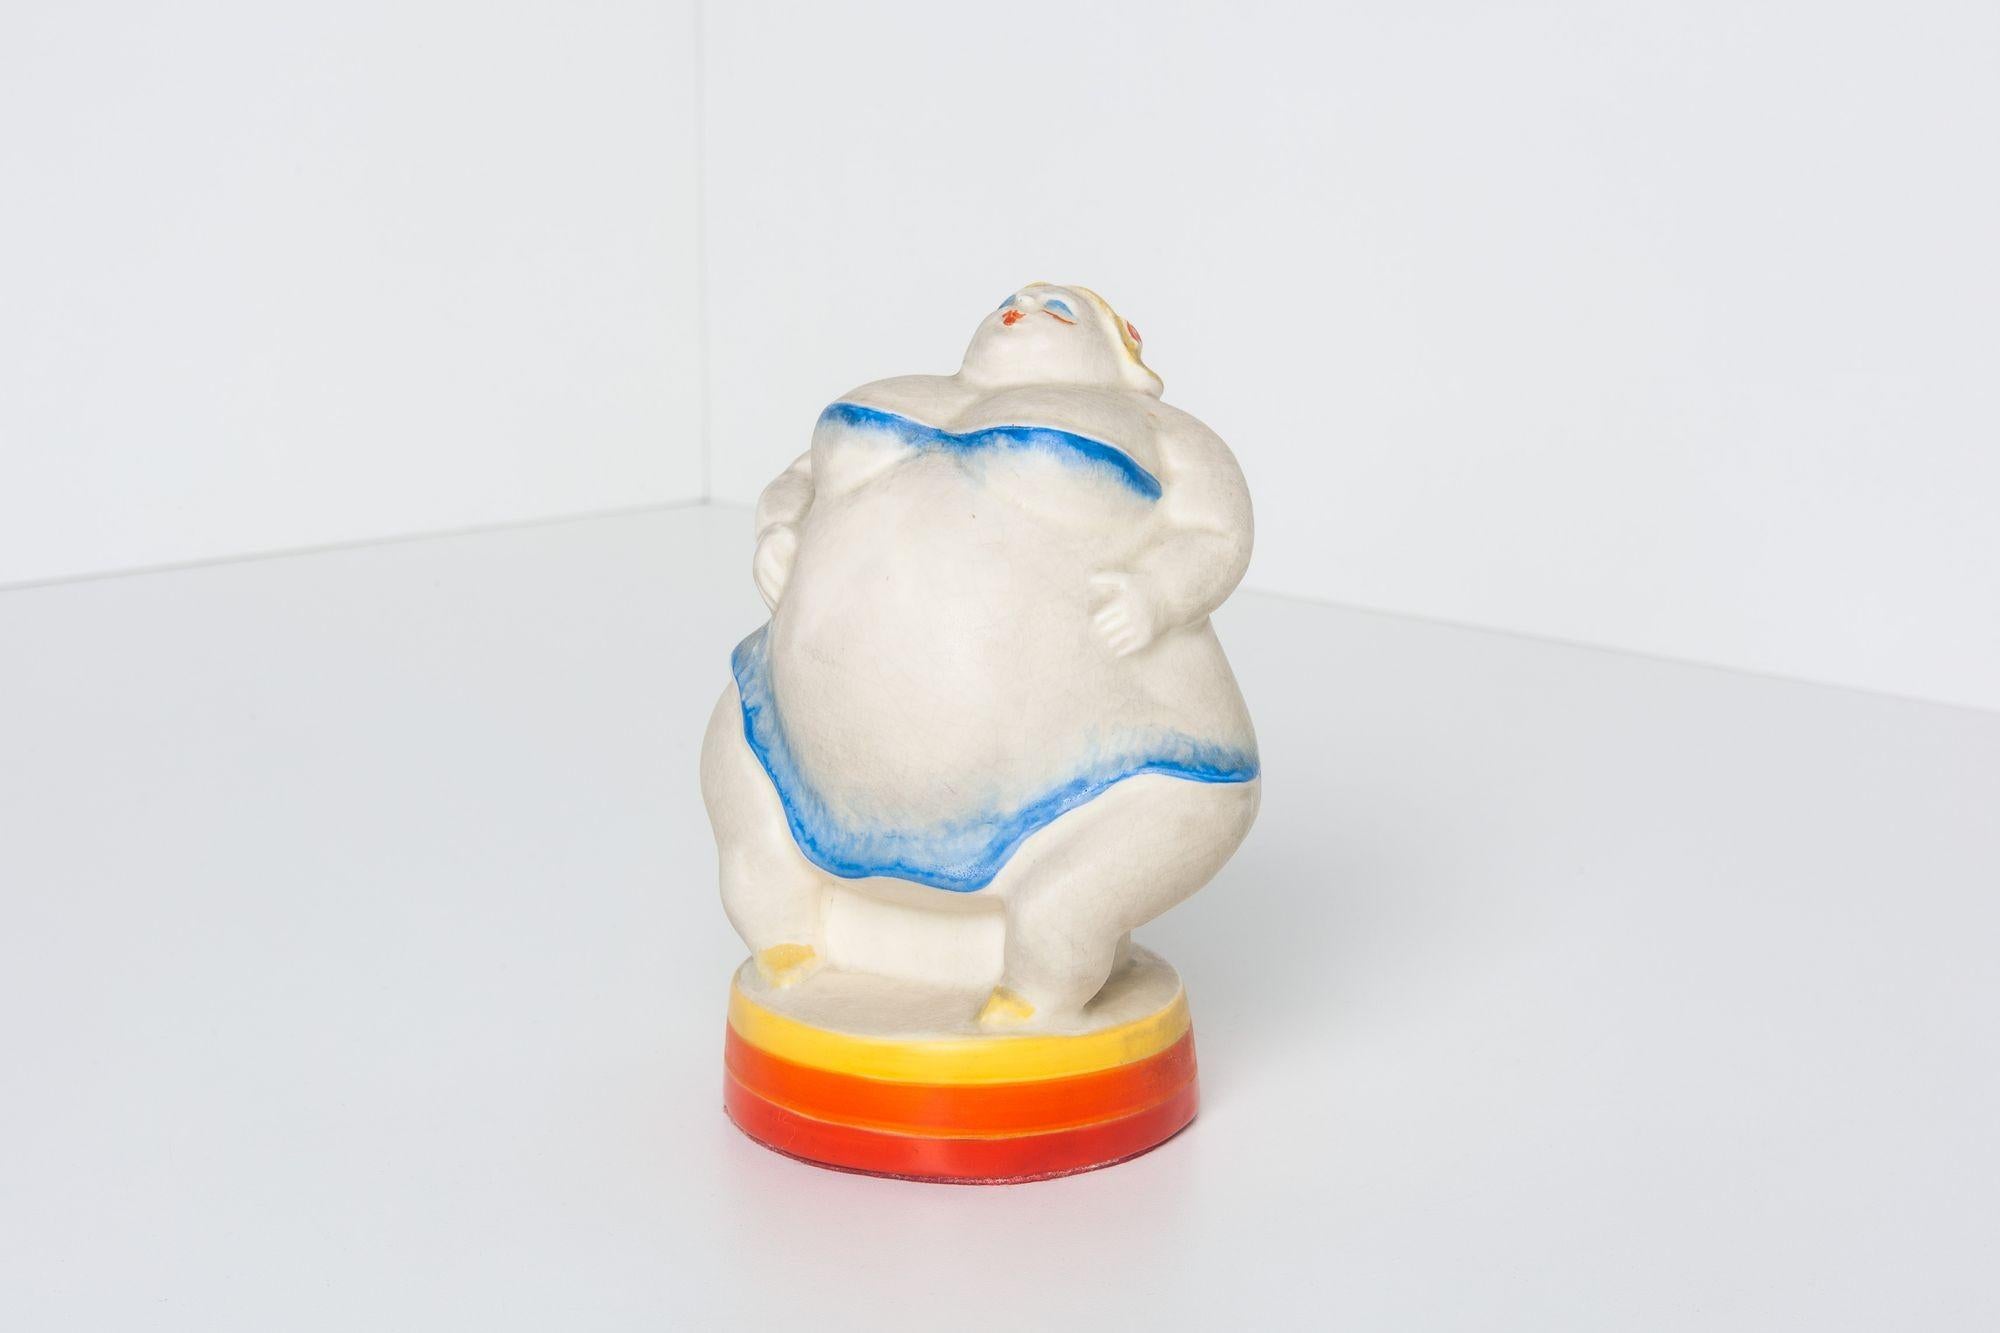 Seltene Viktor Schreckengost Little Nell, glasierte Porzellanfigur mit eingeprägter Herstellermarke auf dem Sockel.
Abmessungen: 5,5